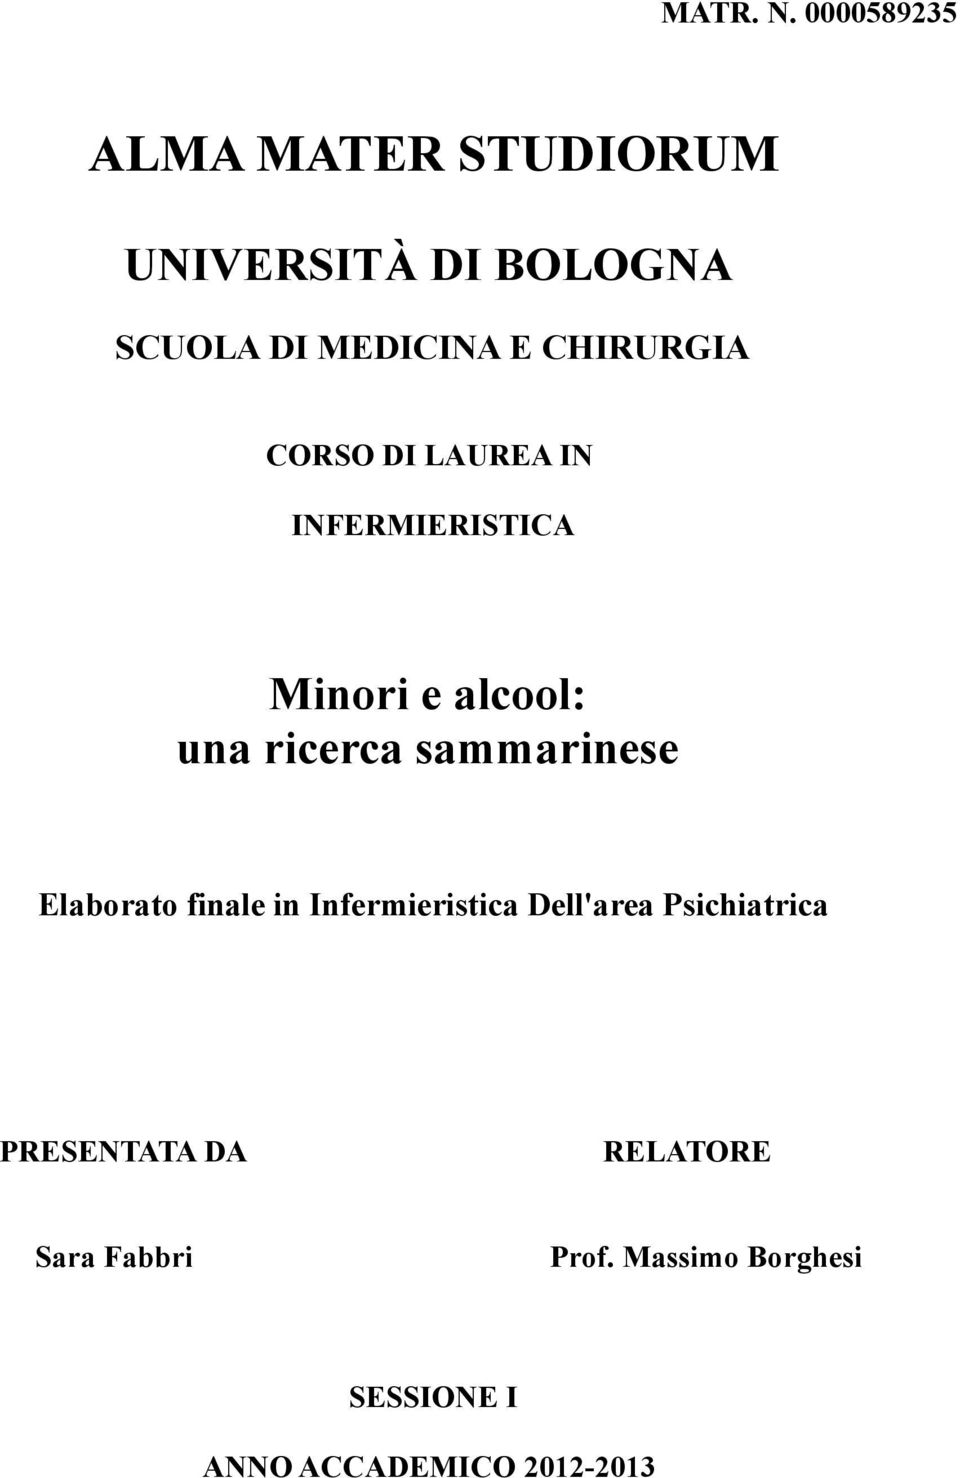 CHIRURGIA CORSO DI LAUREA IN INFERMIERISTICA Minori e alcool: una ricerca